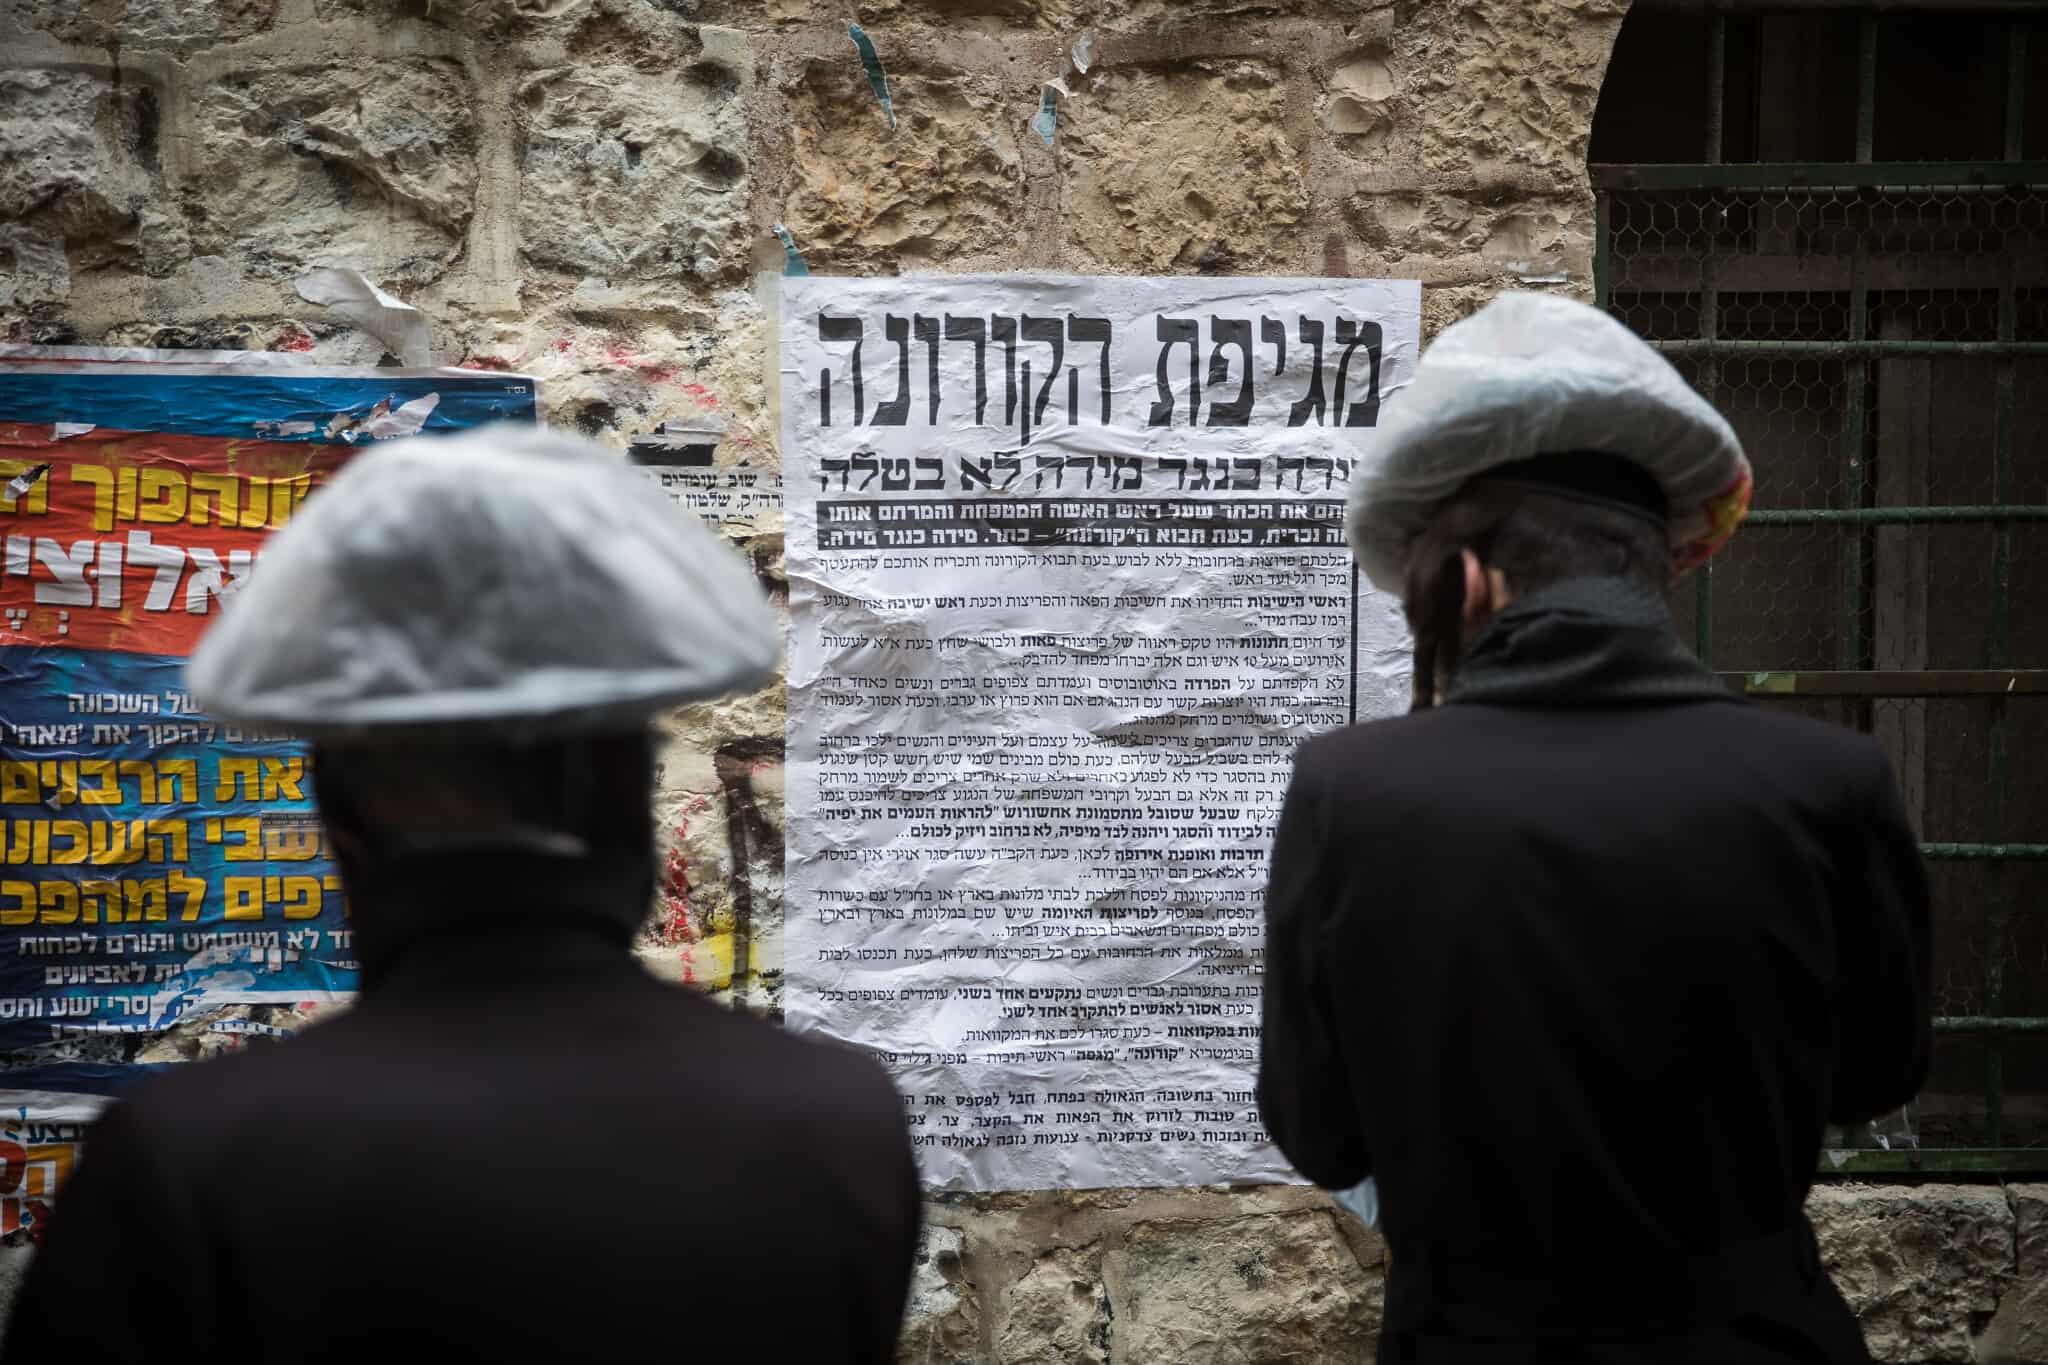 כרזה (פשקוויל) עם מידע על הקורונה למגזר החרדי בירושלים, מרץ 2020 (צילום: Yonatan Sindel/Flash90)